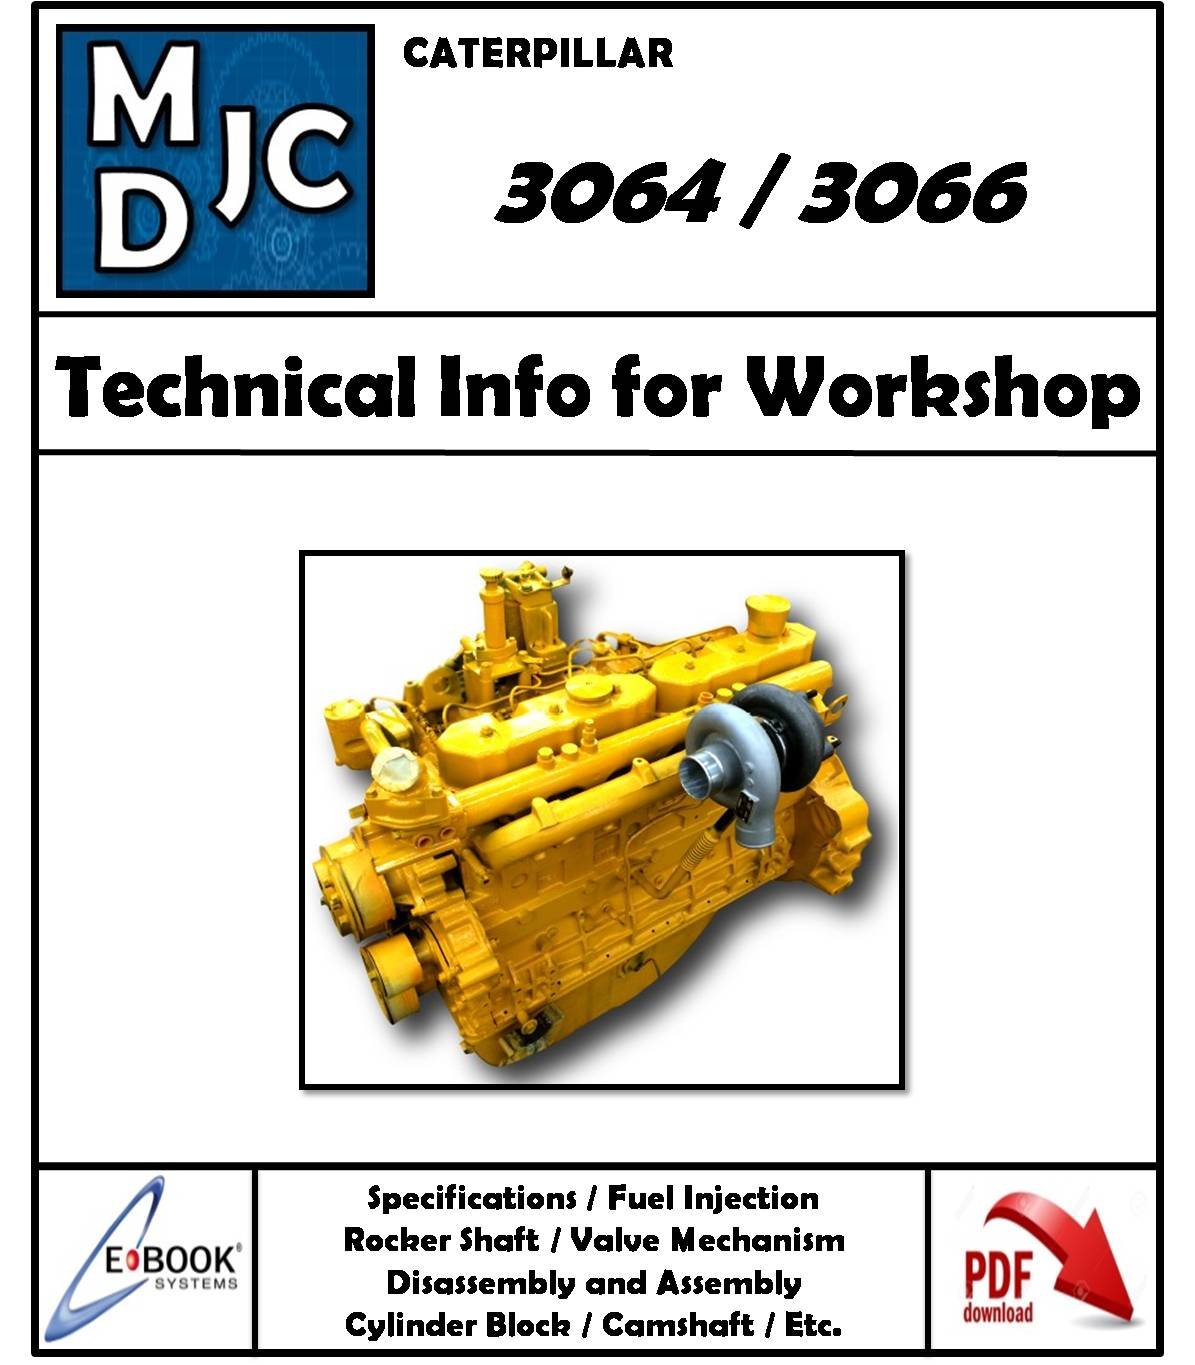 Manual de Información Técnica para Taller Motor Caterpillar 3064 - 3066